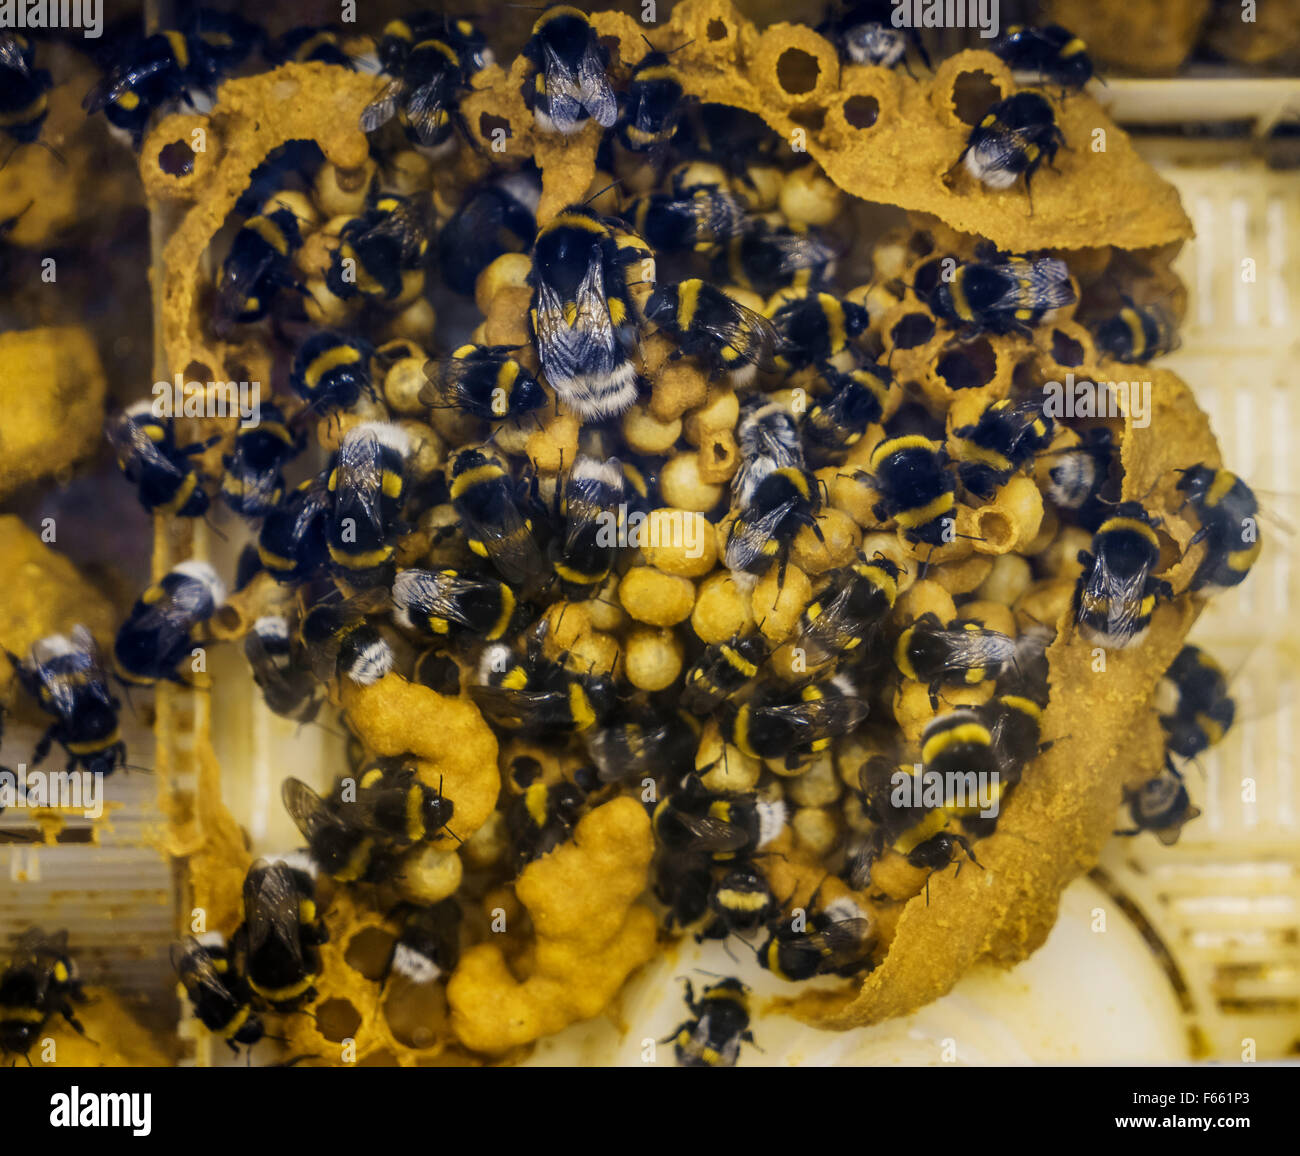 Les abeilles du miel dans les émissions, l'Islande Banque D'Images